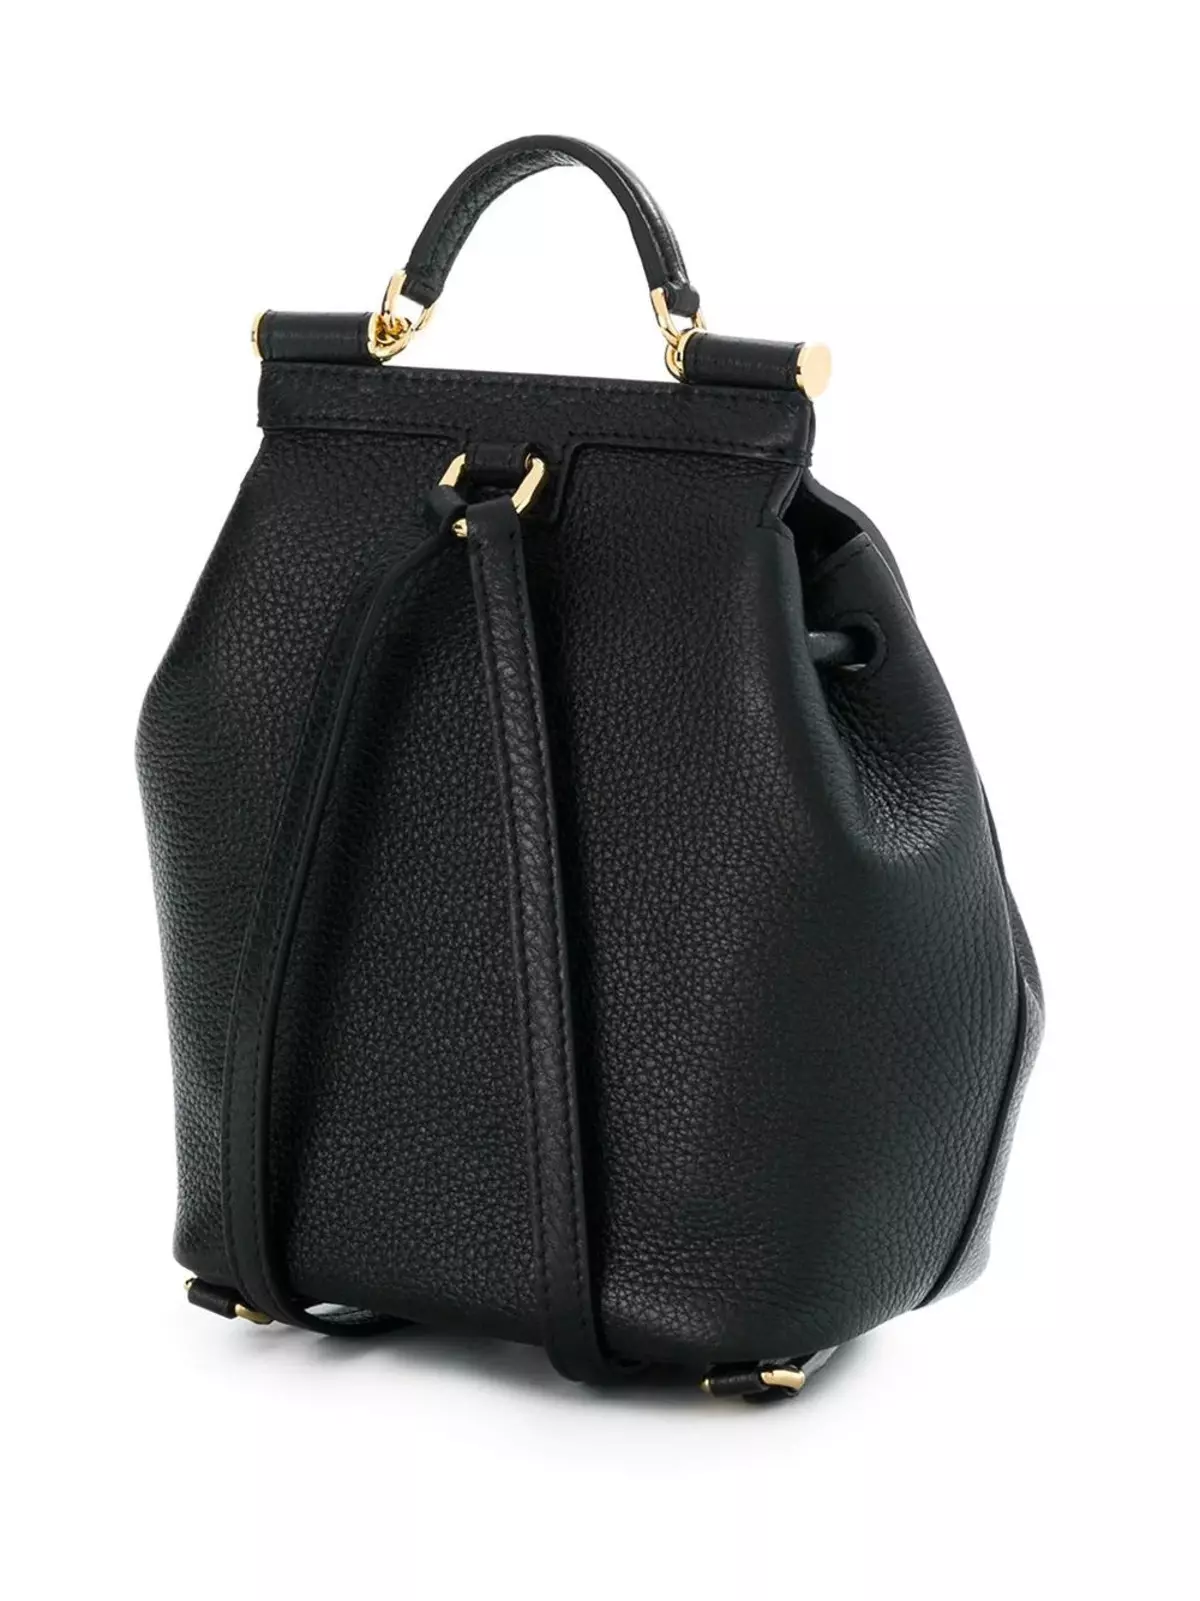 Dolce＆Gabbana Backpacks：女性和男士，黑色和红色，皮革背包袋和其他型号。如何区分原始副本？ 2559_19